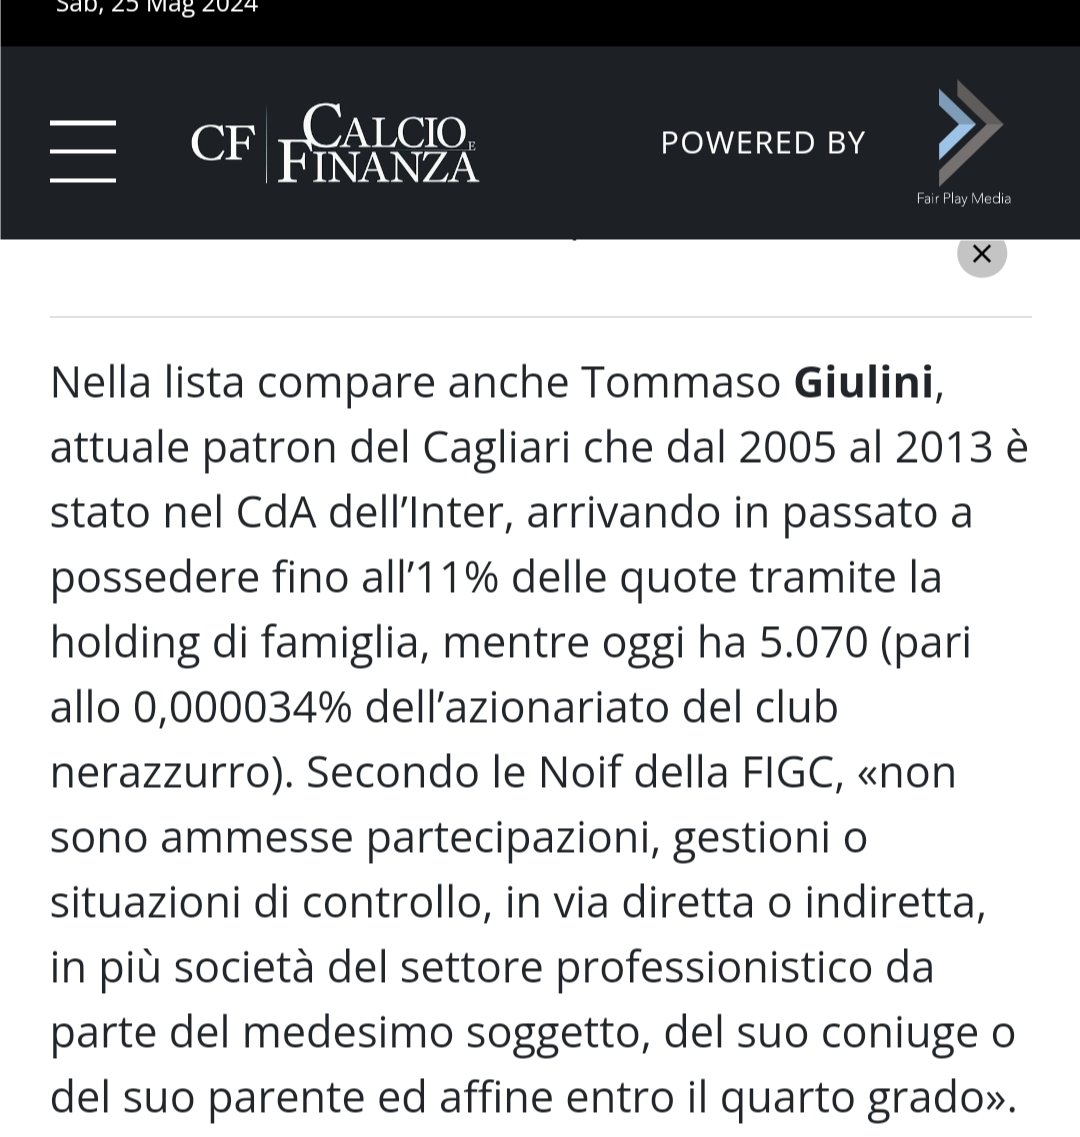 Altra nefandezza.
Giulini, patron del Cagliari, è un piccolo azionista dell'Inter.
Secondo le Noif della FIGC, «non sono ammesse partecipazioni, gestioni o situazioni di controllo, in via diretta o indiretta, in più società del settore professionistico da parte del medesimo